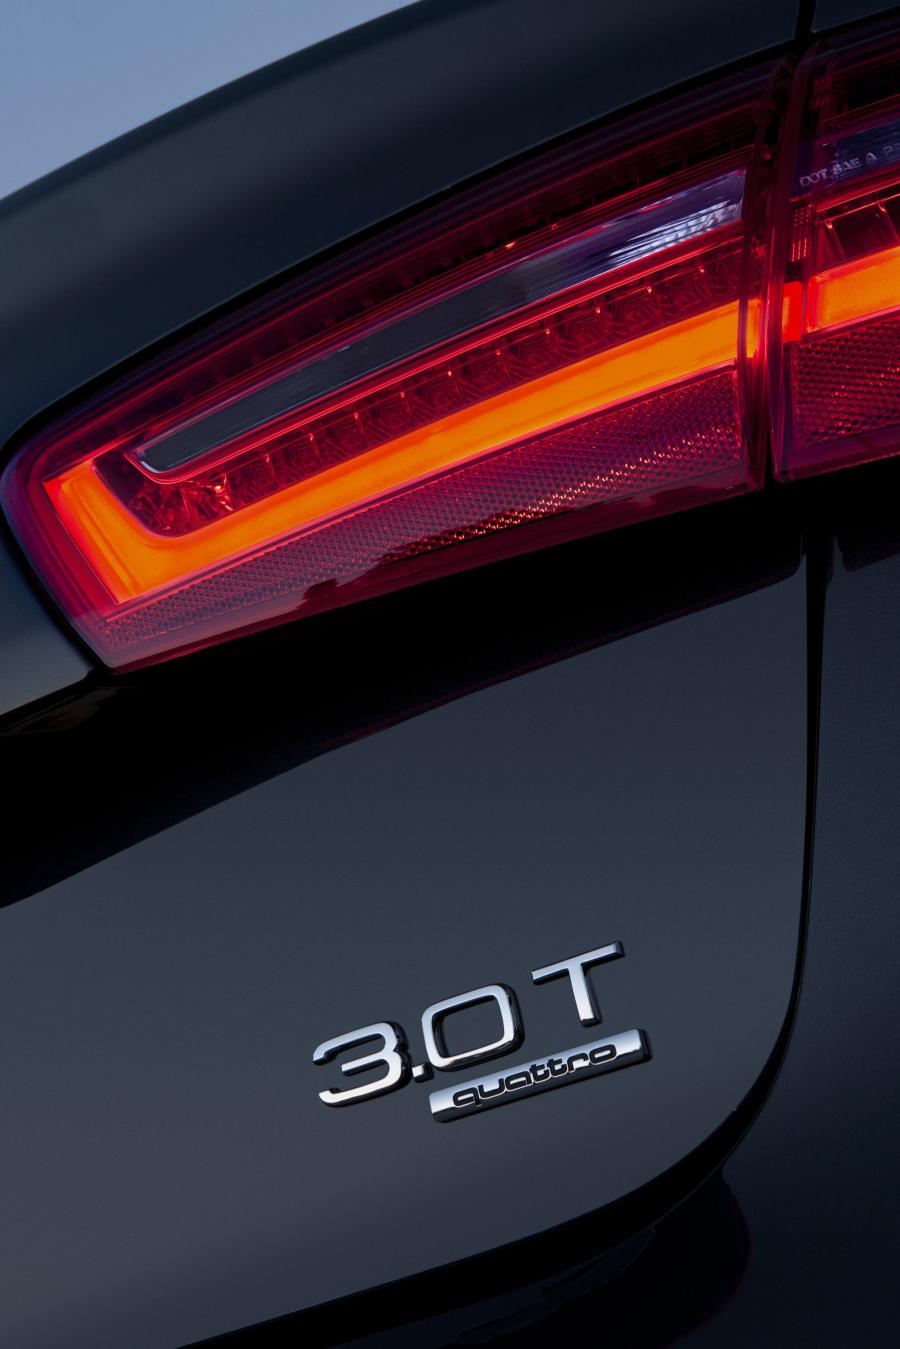 Логотип Audi A6 3.0T Quattro S-Line Sedan в кузове 4G, C7, выпускаемого с  2011 года по 2014 год для рынка США и Канады. Фото 74. VERcity